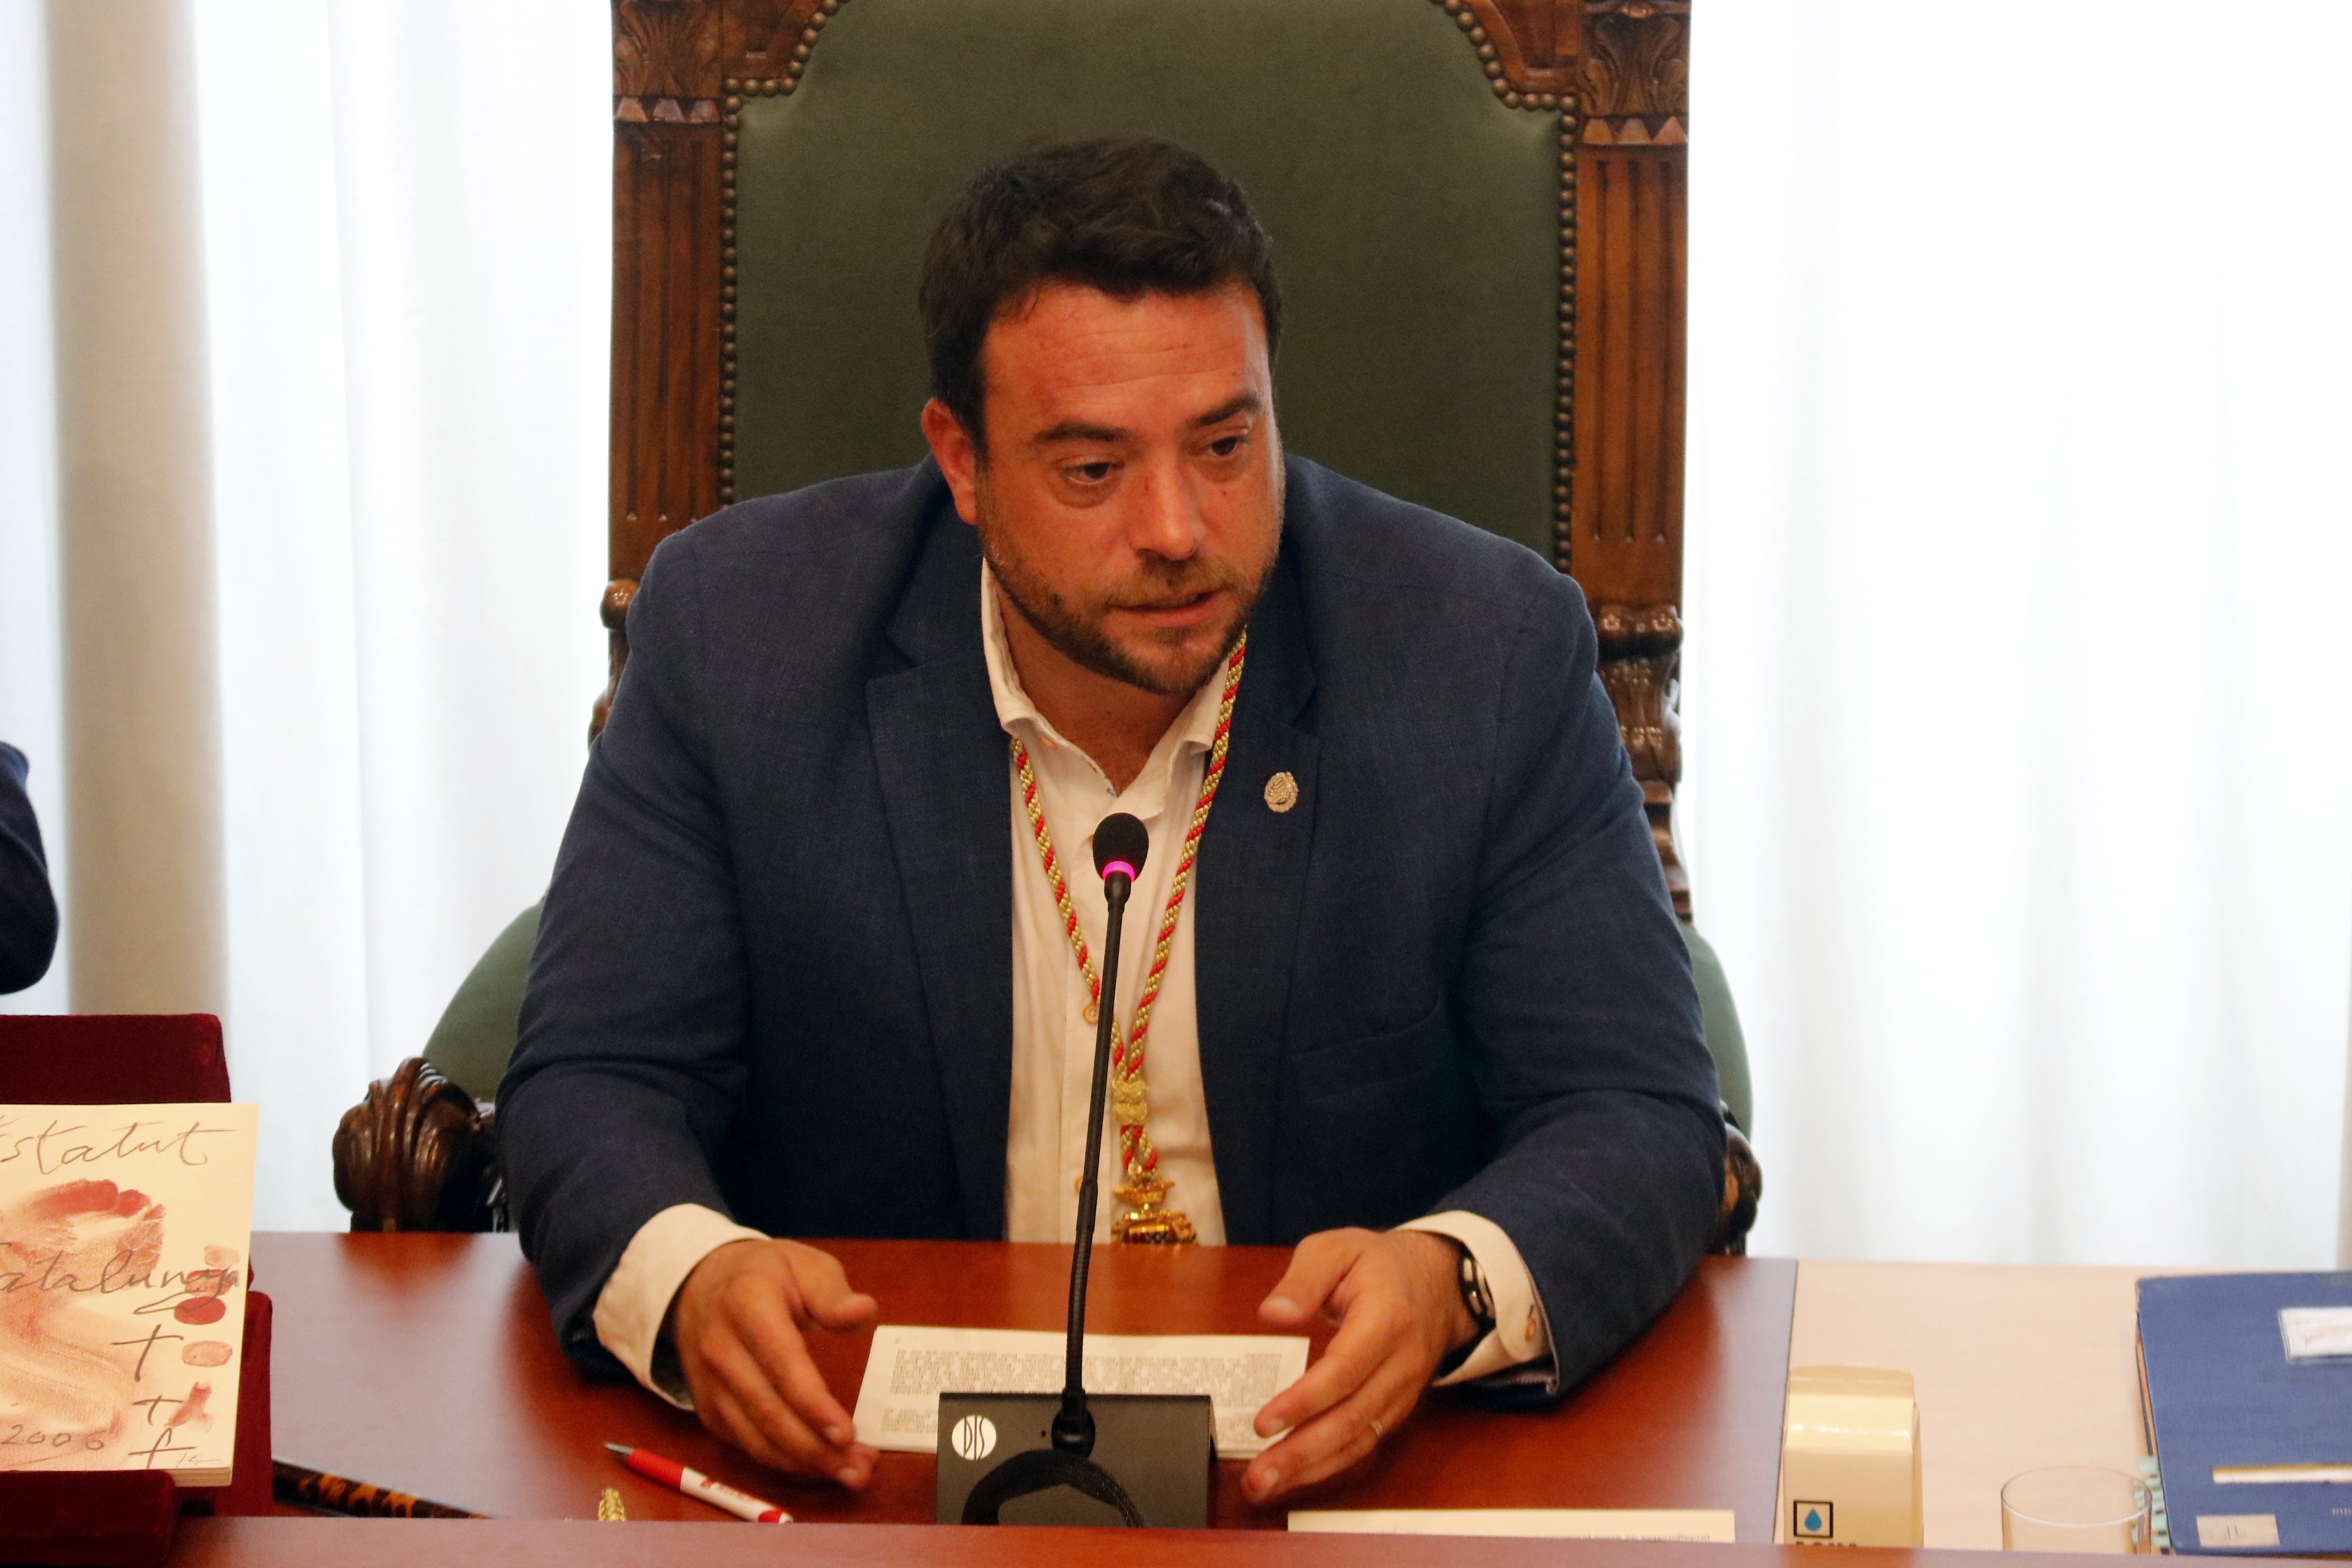 L'alcalde de Badalona justifica el seu rebuig al centre de menors estrangers